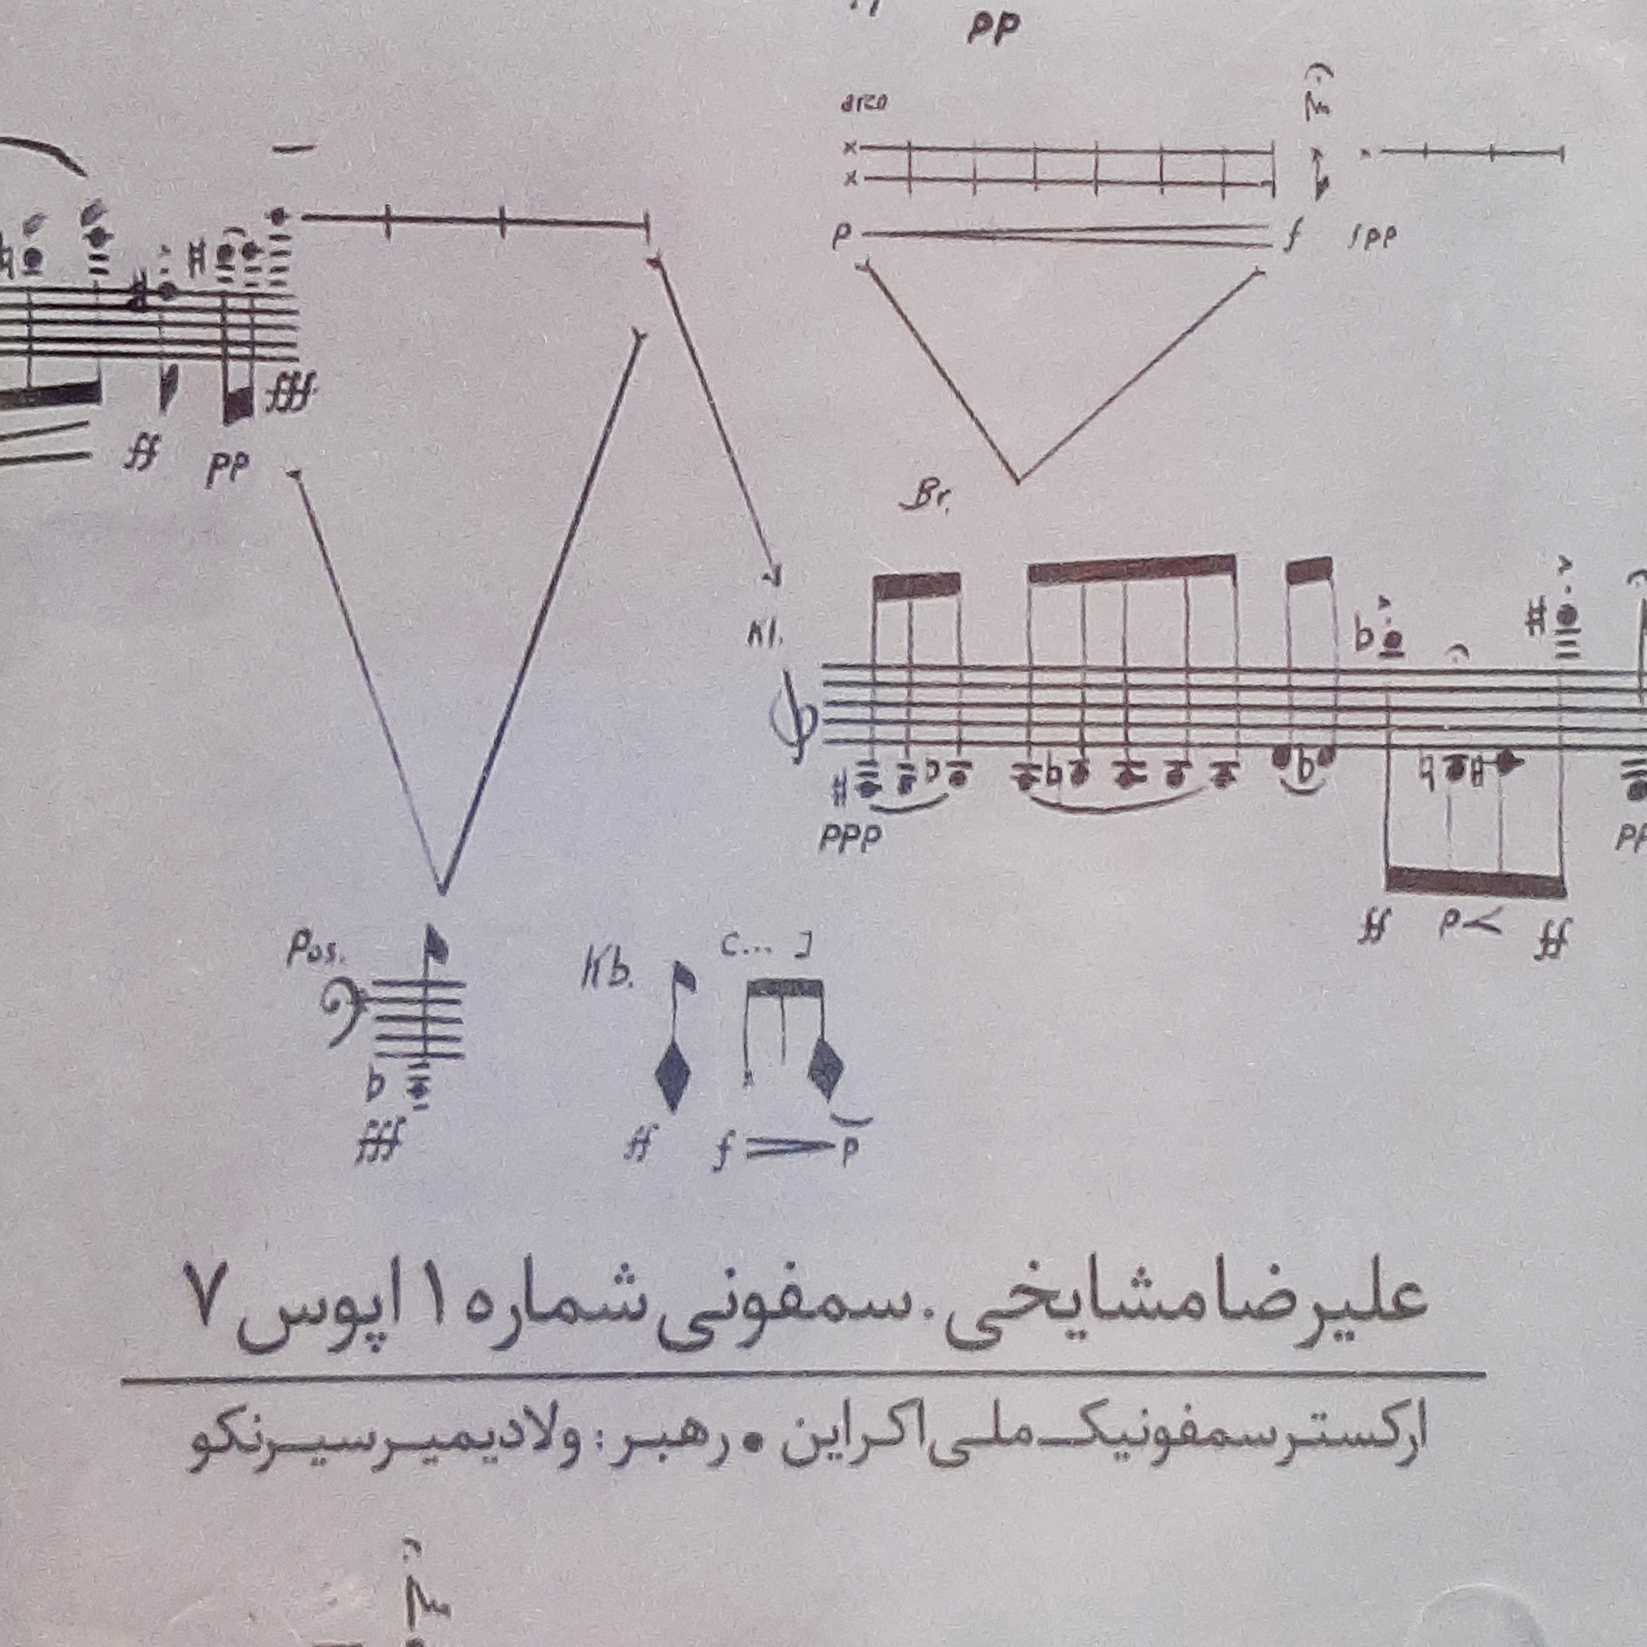 آلبوم موسیقی سمفونی شماره 1 اثر علیرضا مشایخی